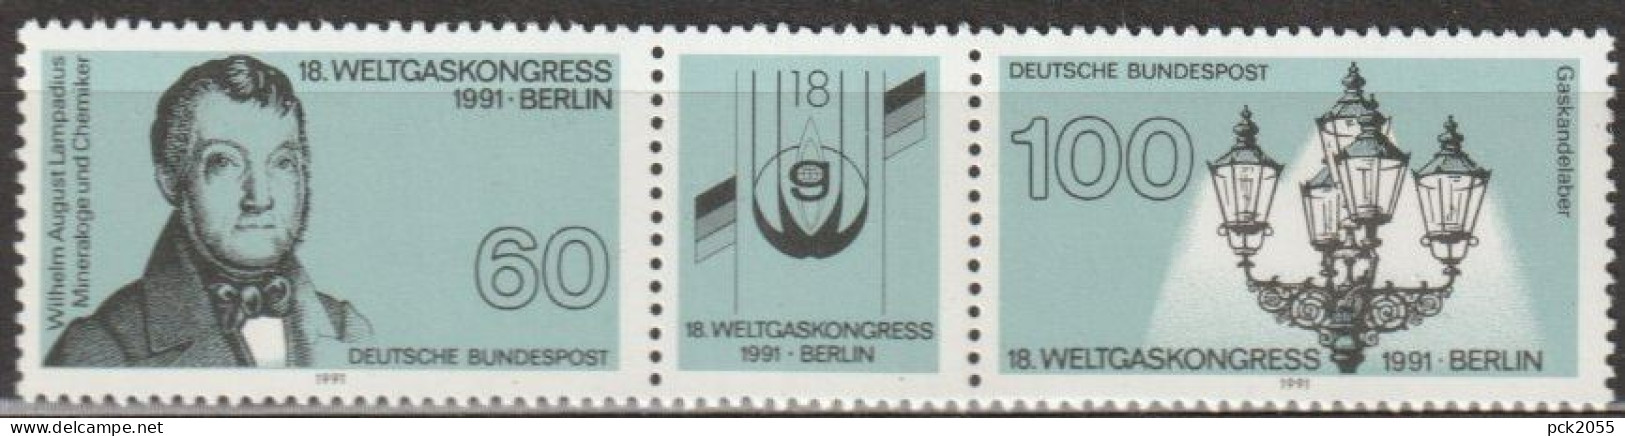 BRD 1991 MiNr.1537 - 1538 3er Streifen ** Postfrisch Weltgaskongress (A2574 )günstige Versandkoste - Nuovi